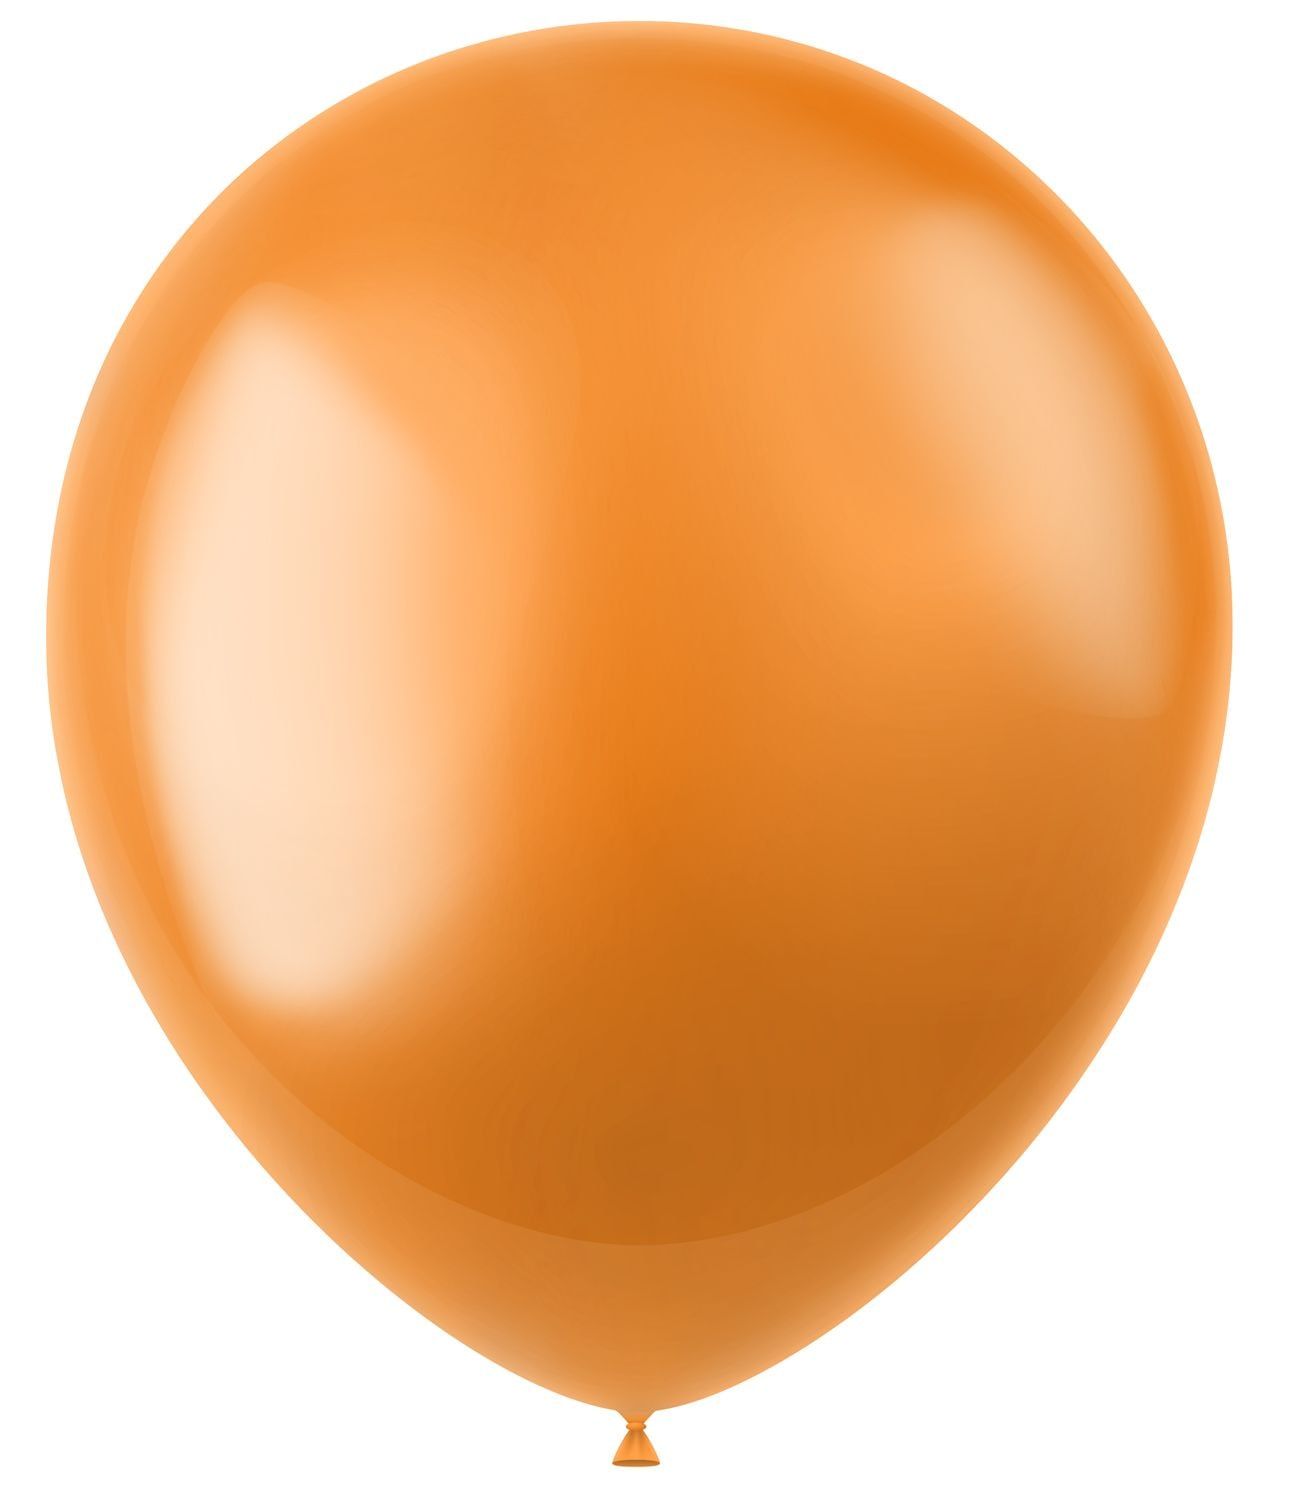 Marigold oranje metallic ballonnen 50 stuks